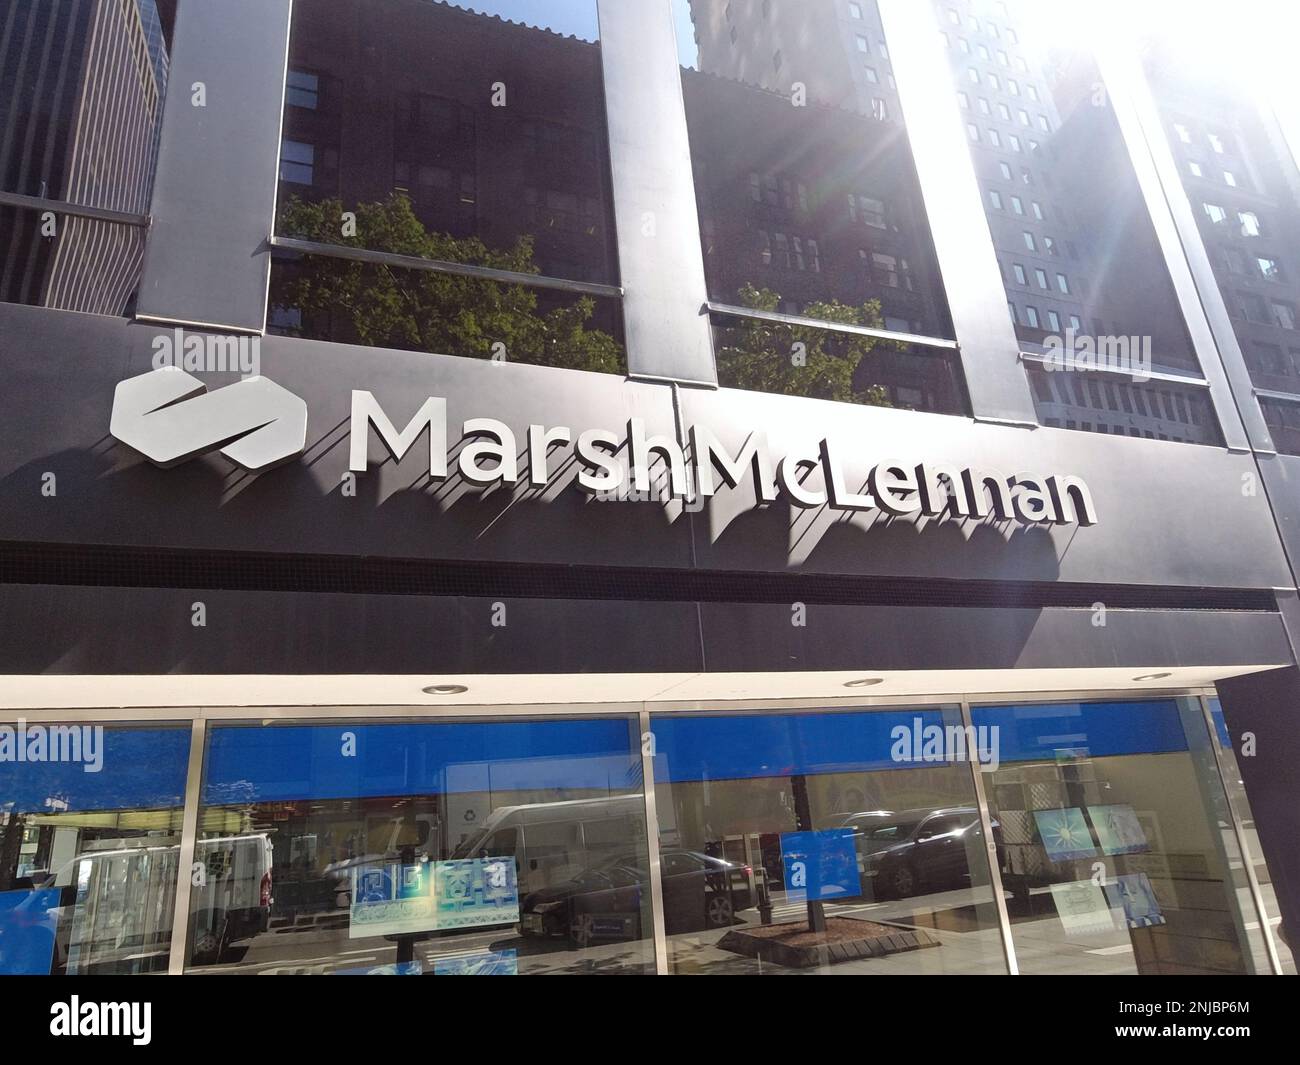 New York, NY - 26 août. 2021 : la compagnie d'assurance et la société de courtage financier Marsh McLennan signent, portent le nom et le logo de la société Midtown Manhattan. Banque D'Images